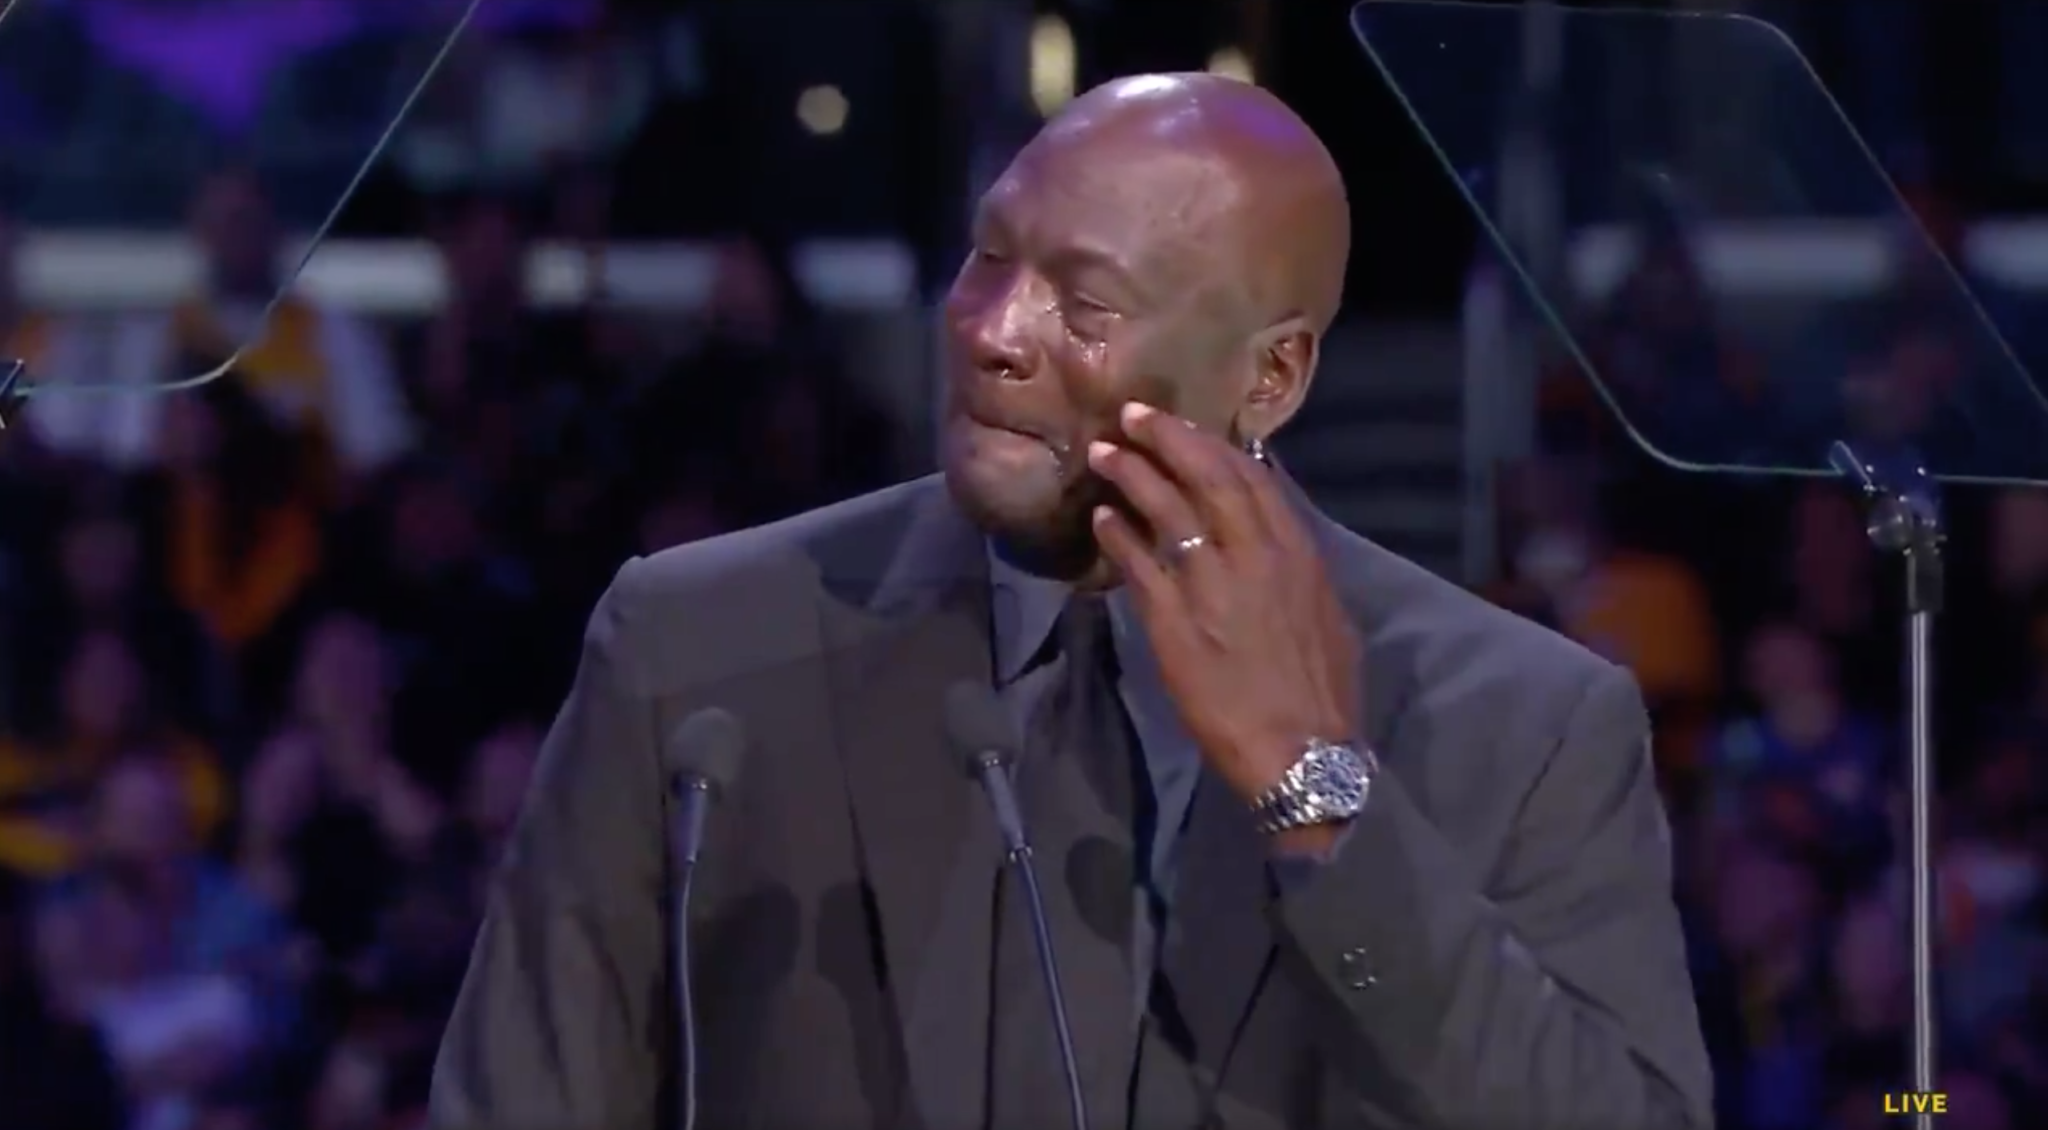 Michael Jordan Jokes About Crying Jordan Meme At Kobe Bryant's Memorial